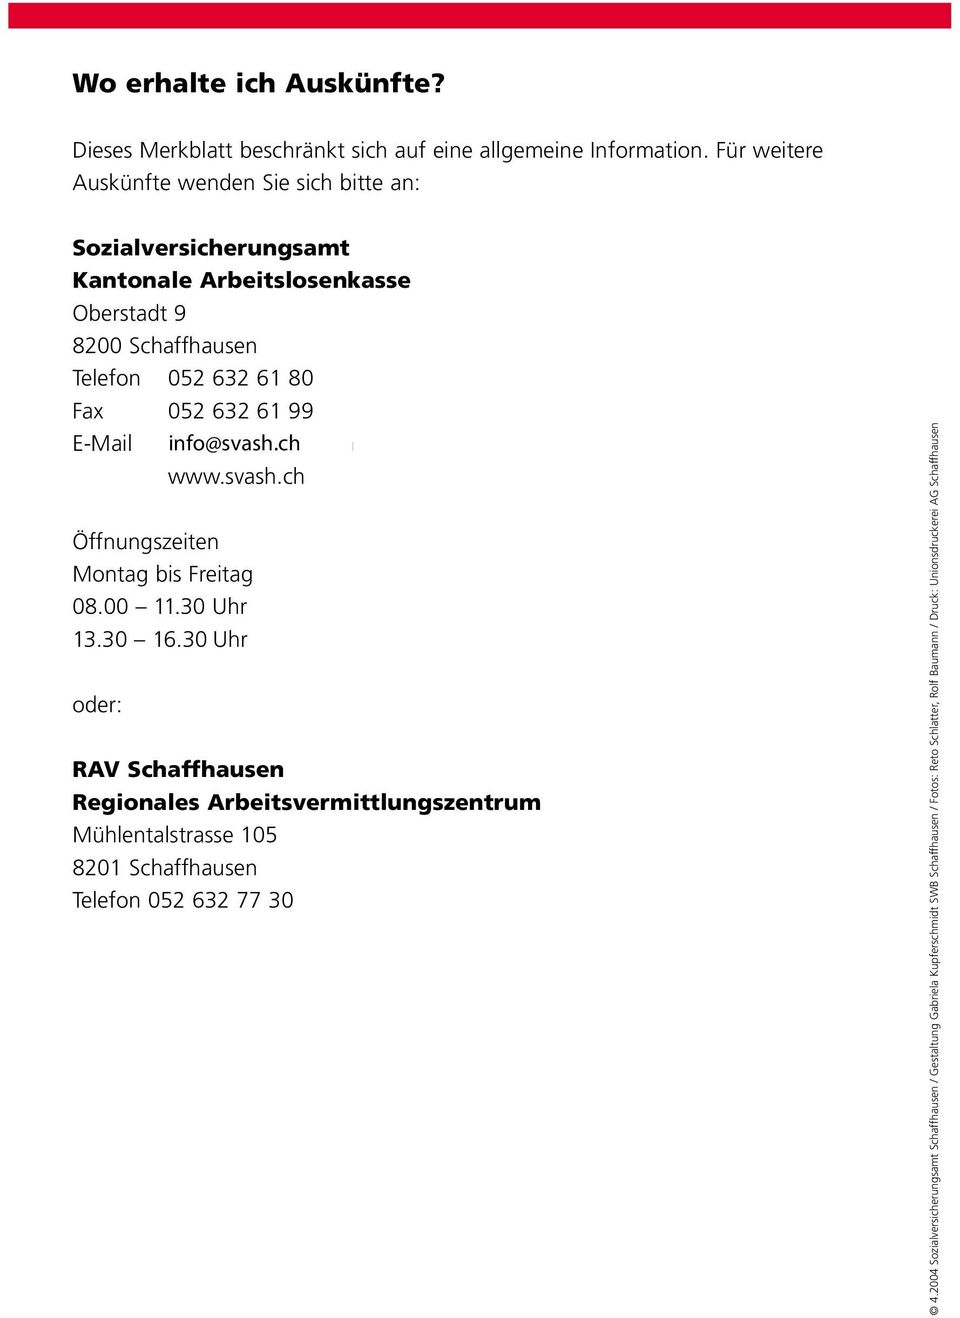 99 E-Mail auskunft@alk-sh.ch www.svash.ch Öffnungszeiten Montag bis Freitag 08.00 11.30 Uhr 13.30 16.